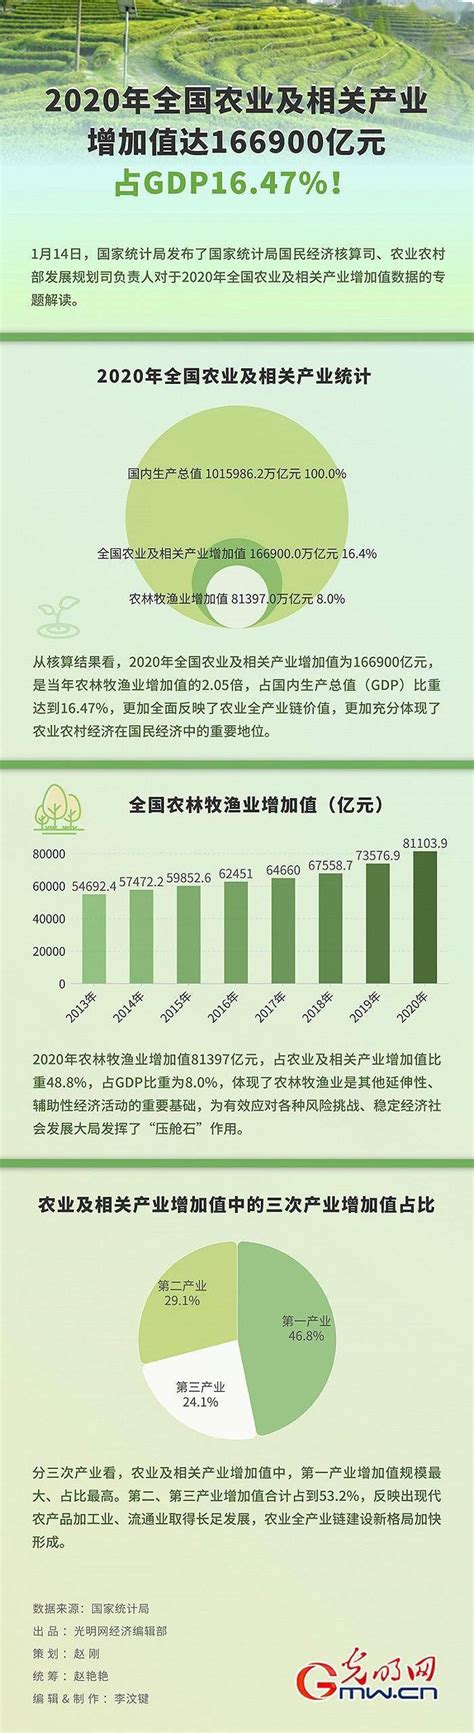 2022年中国种子行业市场现状及发展趋势分析 育种创新成为发展重点_企业新闻网